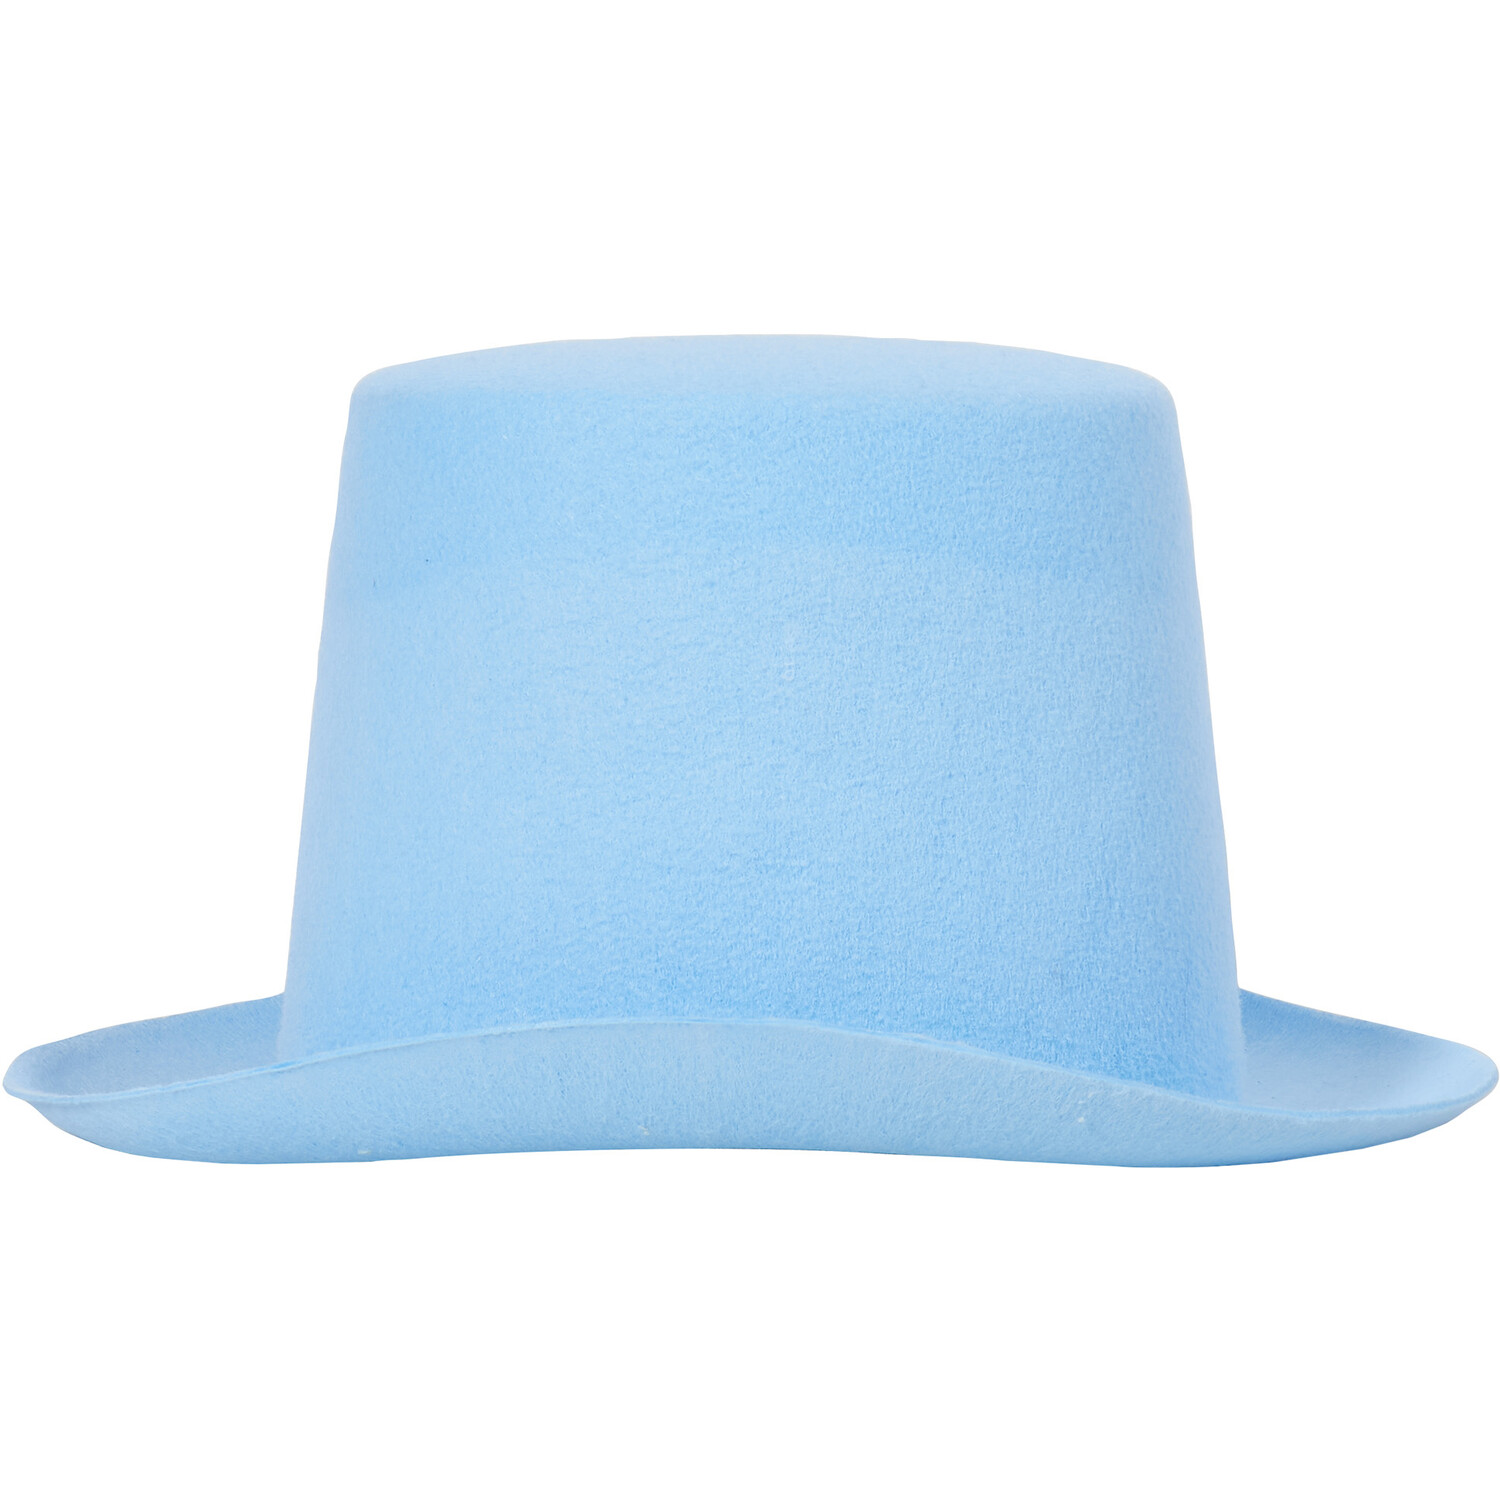 Easter Top Hat - Blue Image 4